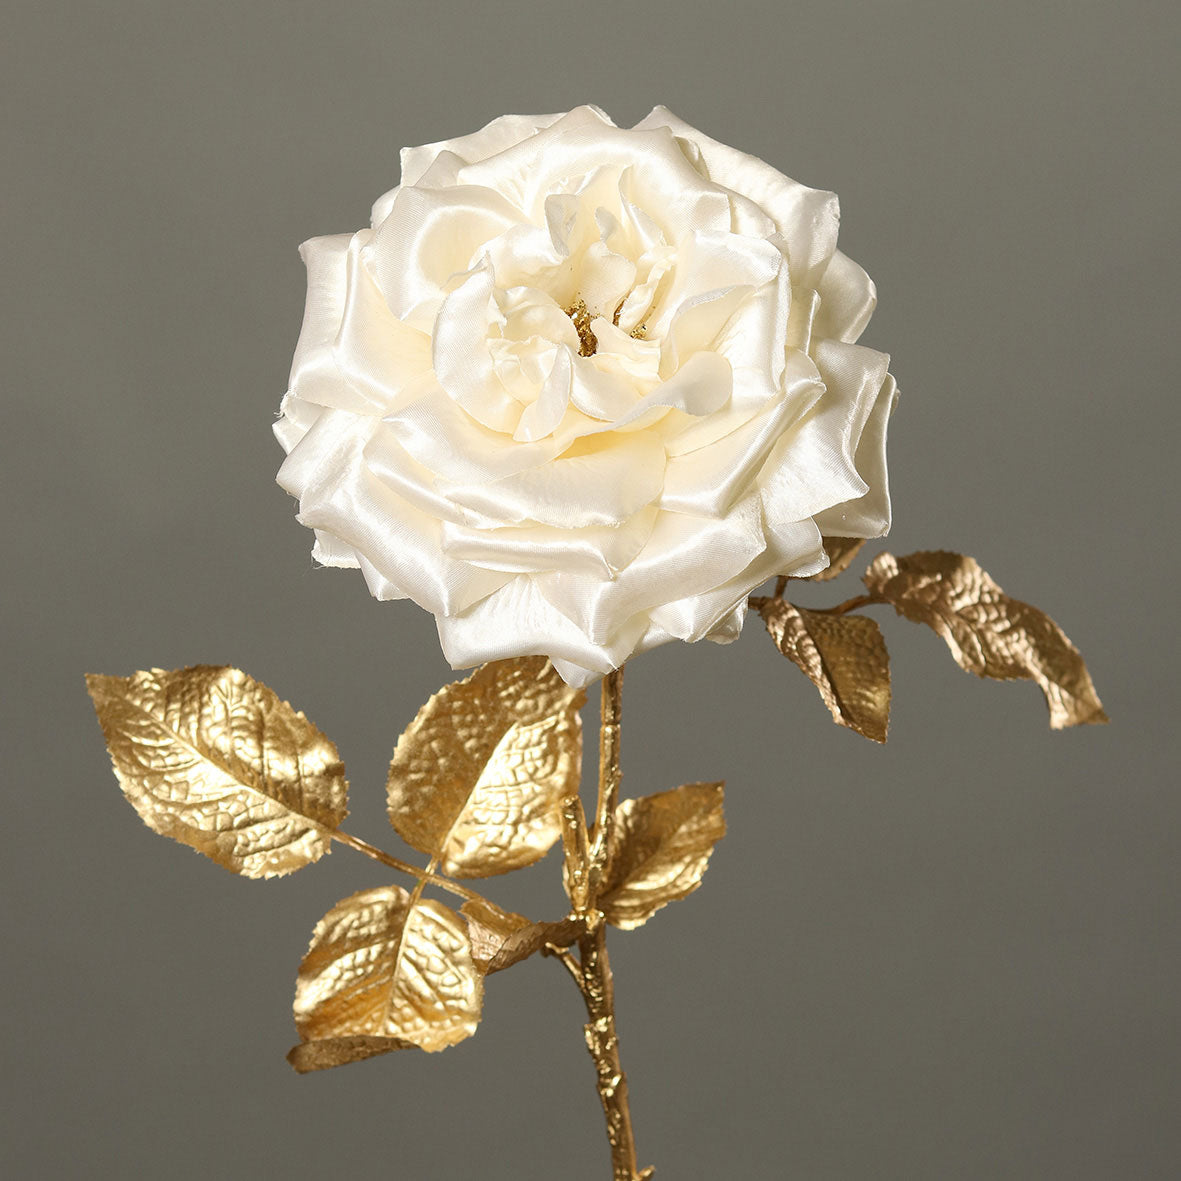 Fényes aranyszínű szárú és levelű, krém színárnyalatú szatén rózsa művirág.